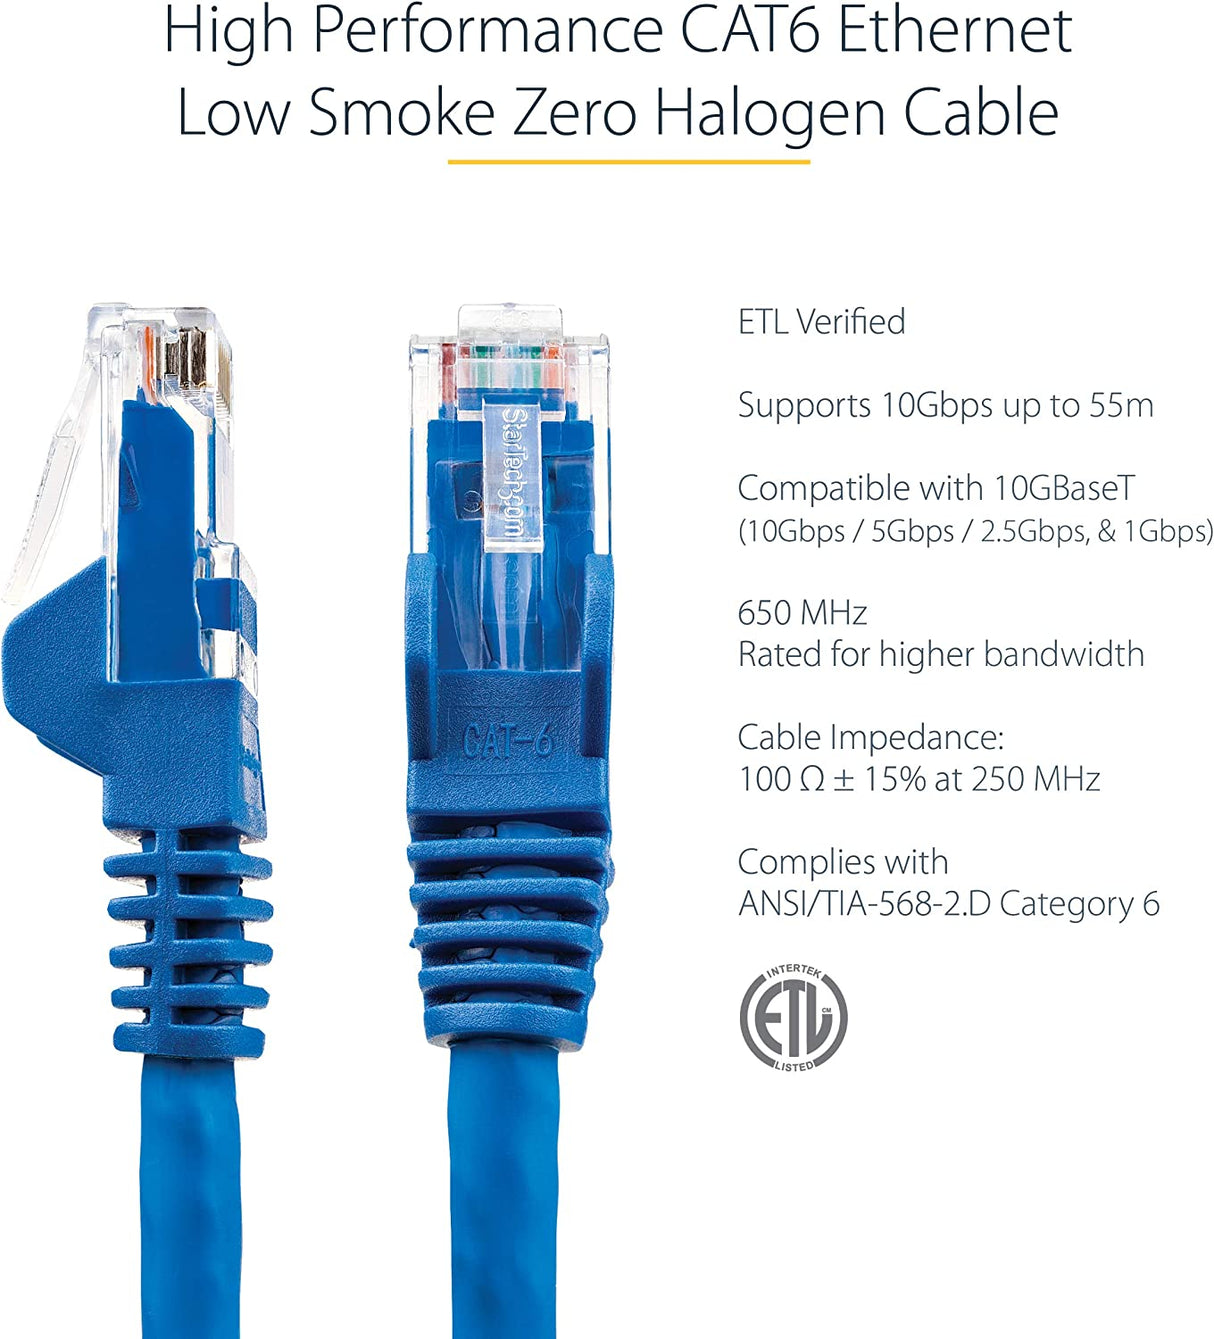 Startech 10ft (3m) CAT6 Ethernet Cable - LSZH (Low Smoke Zero Halogen) - 10 Gigabit 650MHz 100W PoE RJ45 UTP Network Patch Cord Snagless w/Strain Relief - Blue CAT 6, ETL Verified (N6LPATCH10BL) 10 ft Blue